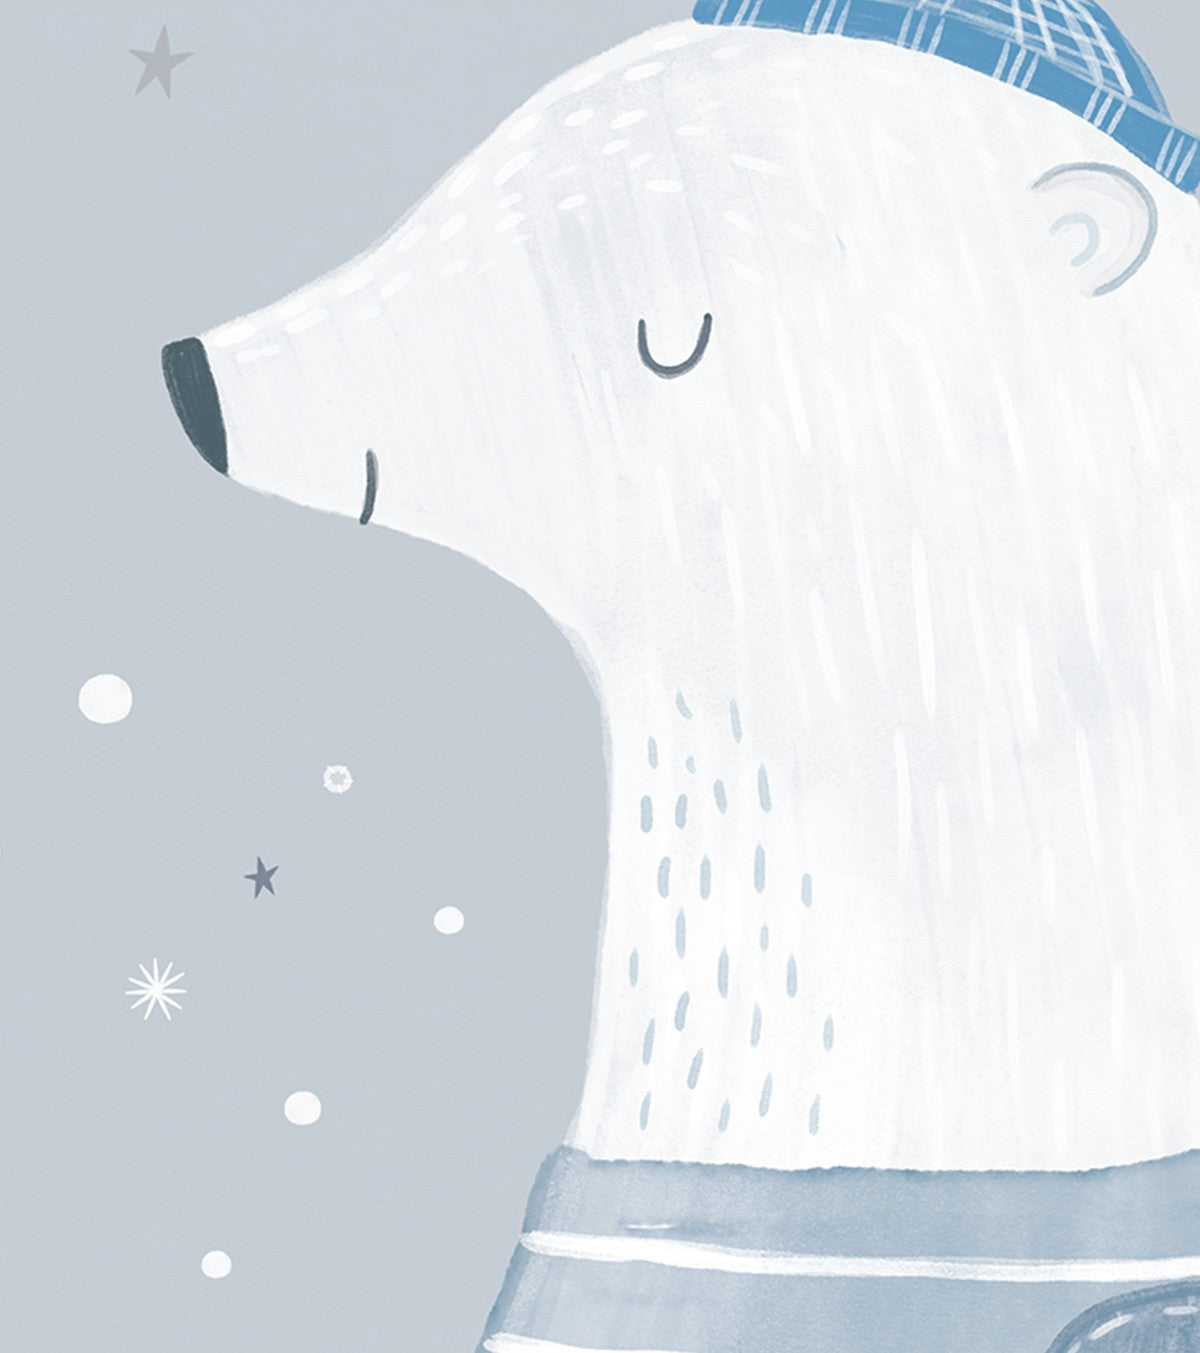 ARTIC DREAM - Children's poster - The polar bear